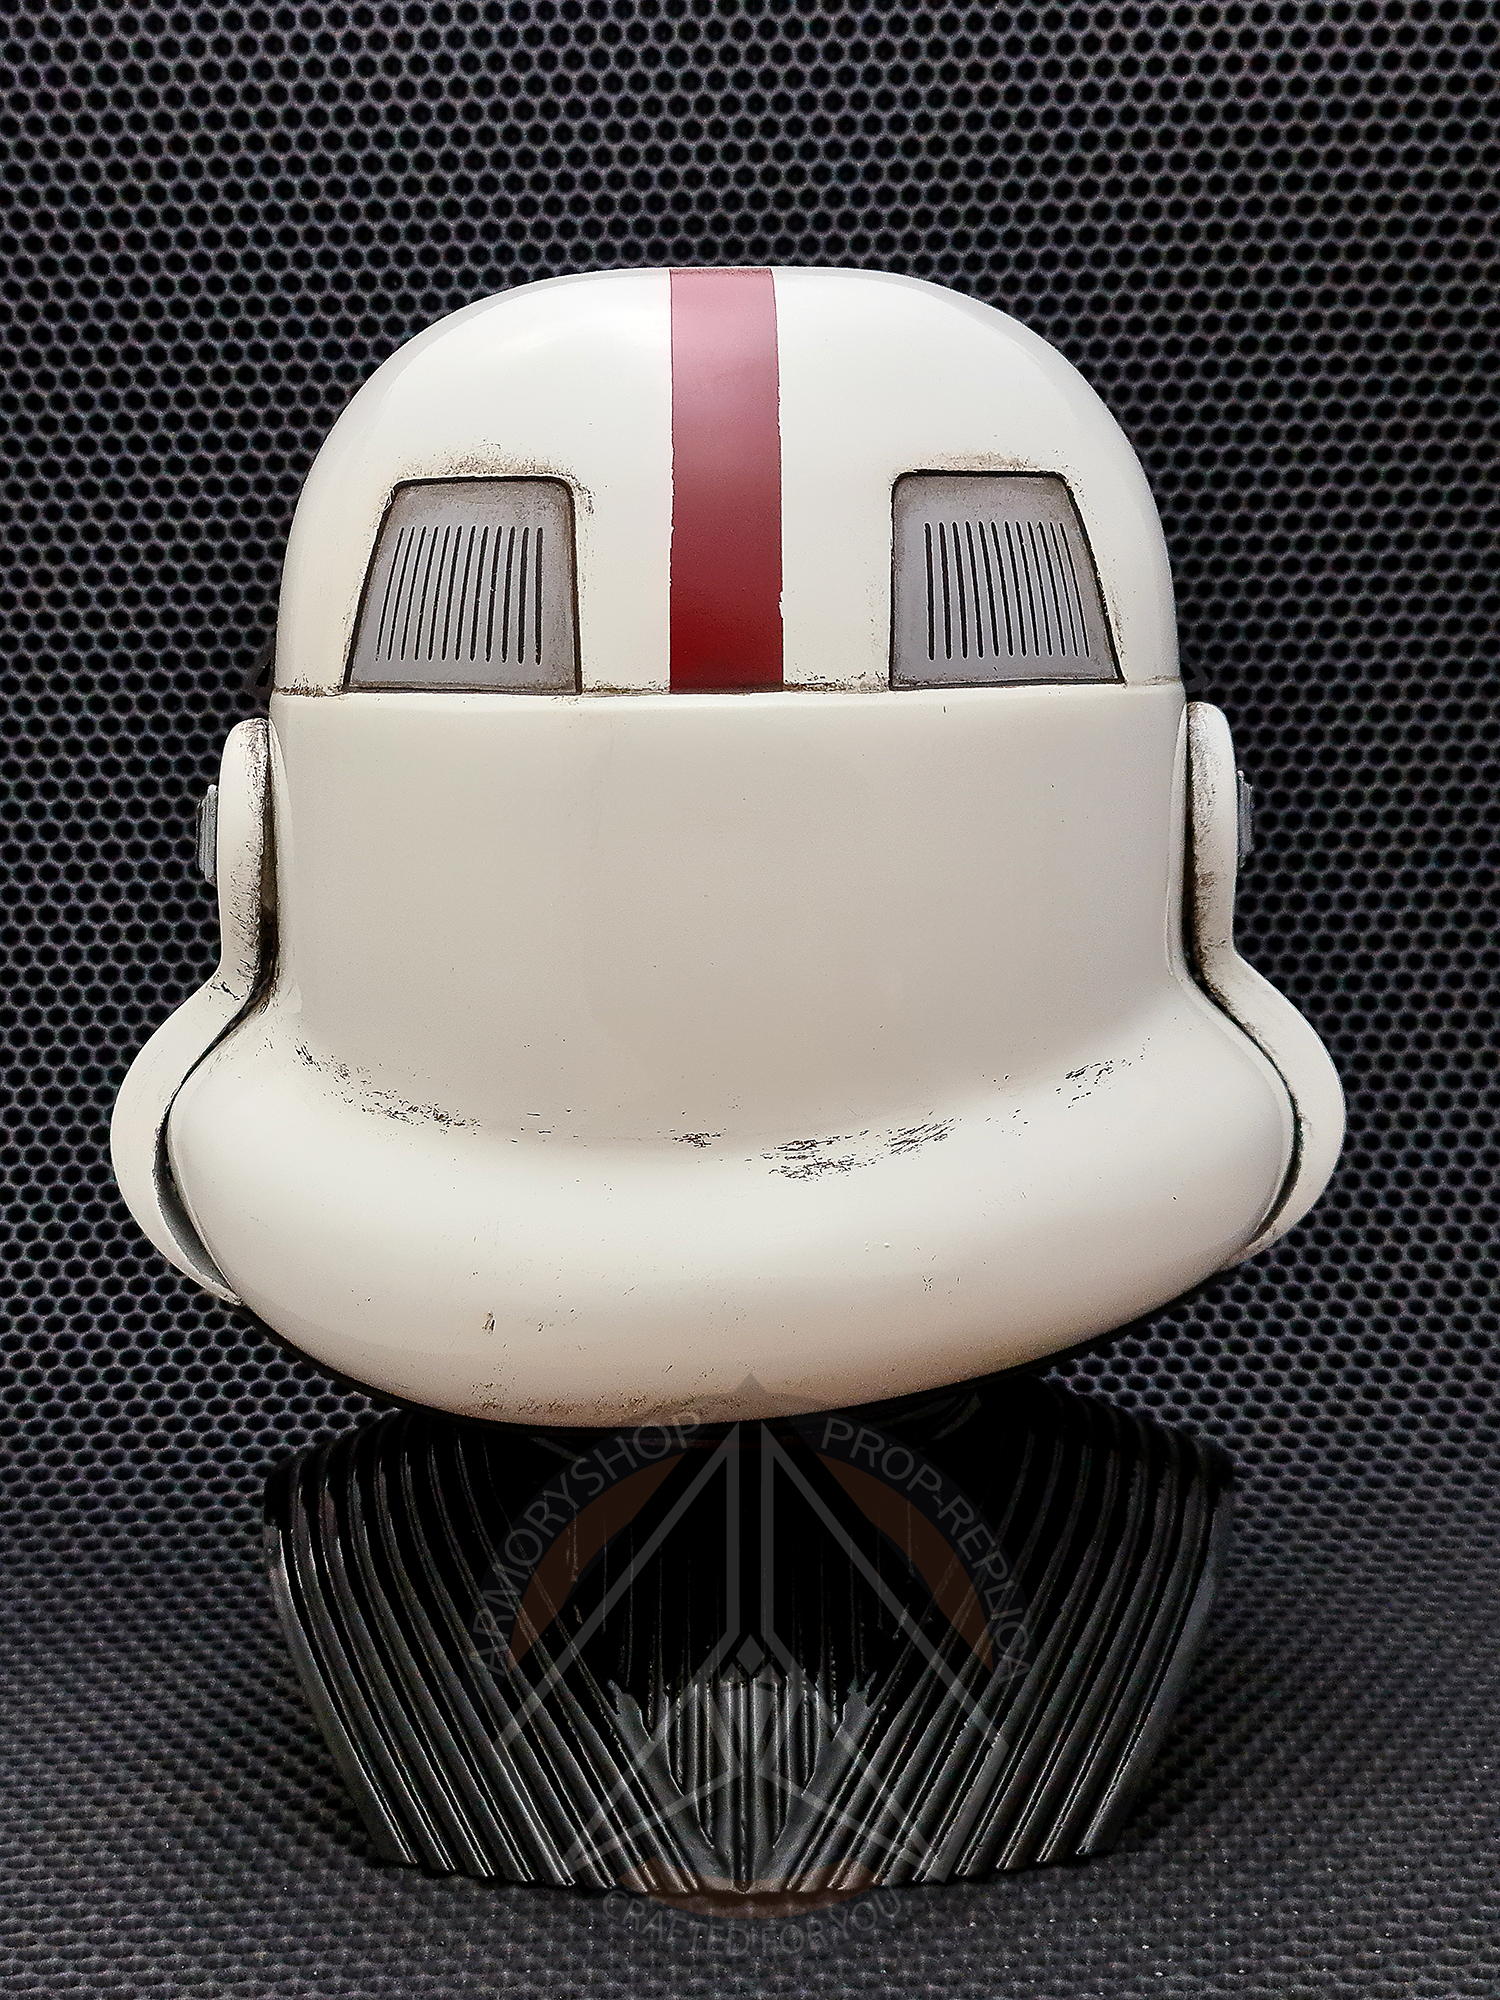 Incinerator Trooper TK helmet (Finished, The Force Unleashed)